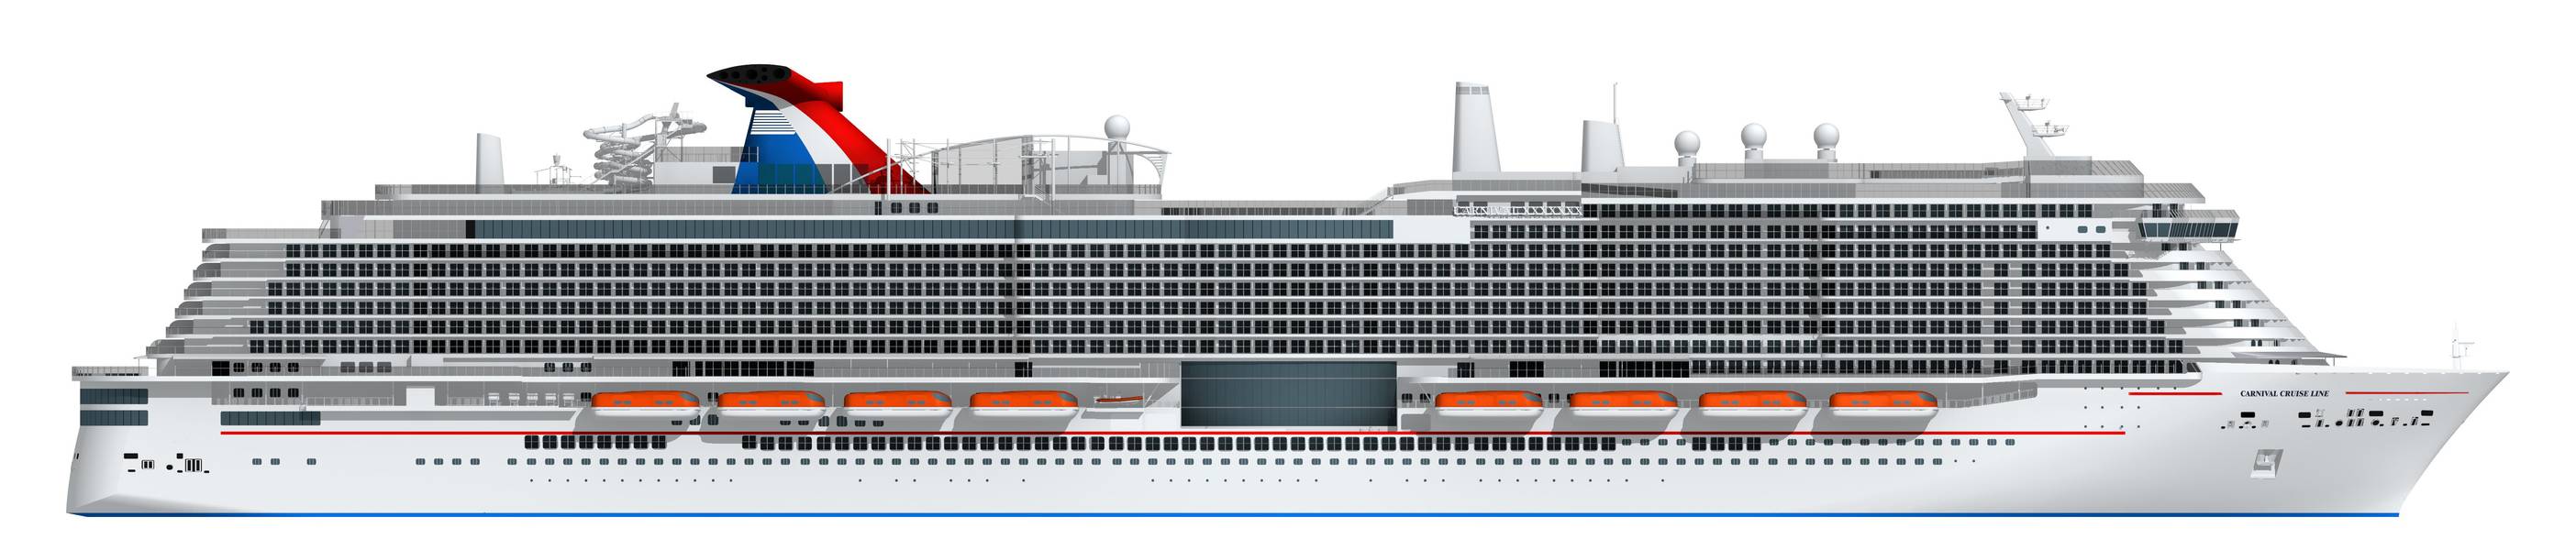 एलएनजी द्वारा संचालित होने के लिए कार्निवल के नए 180,000 टन जहाज के कलाकार प्रतिपादन (छवि: कार्निवल क्रूज़ लाइन)